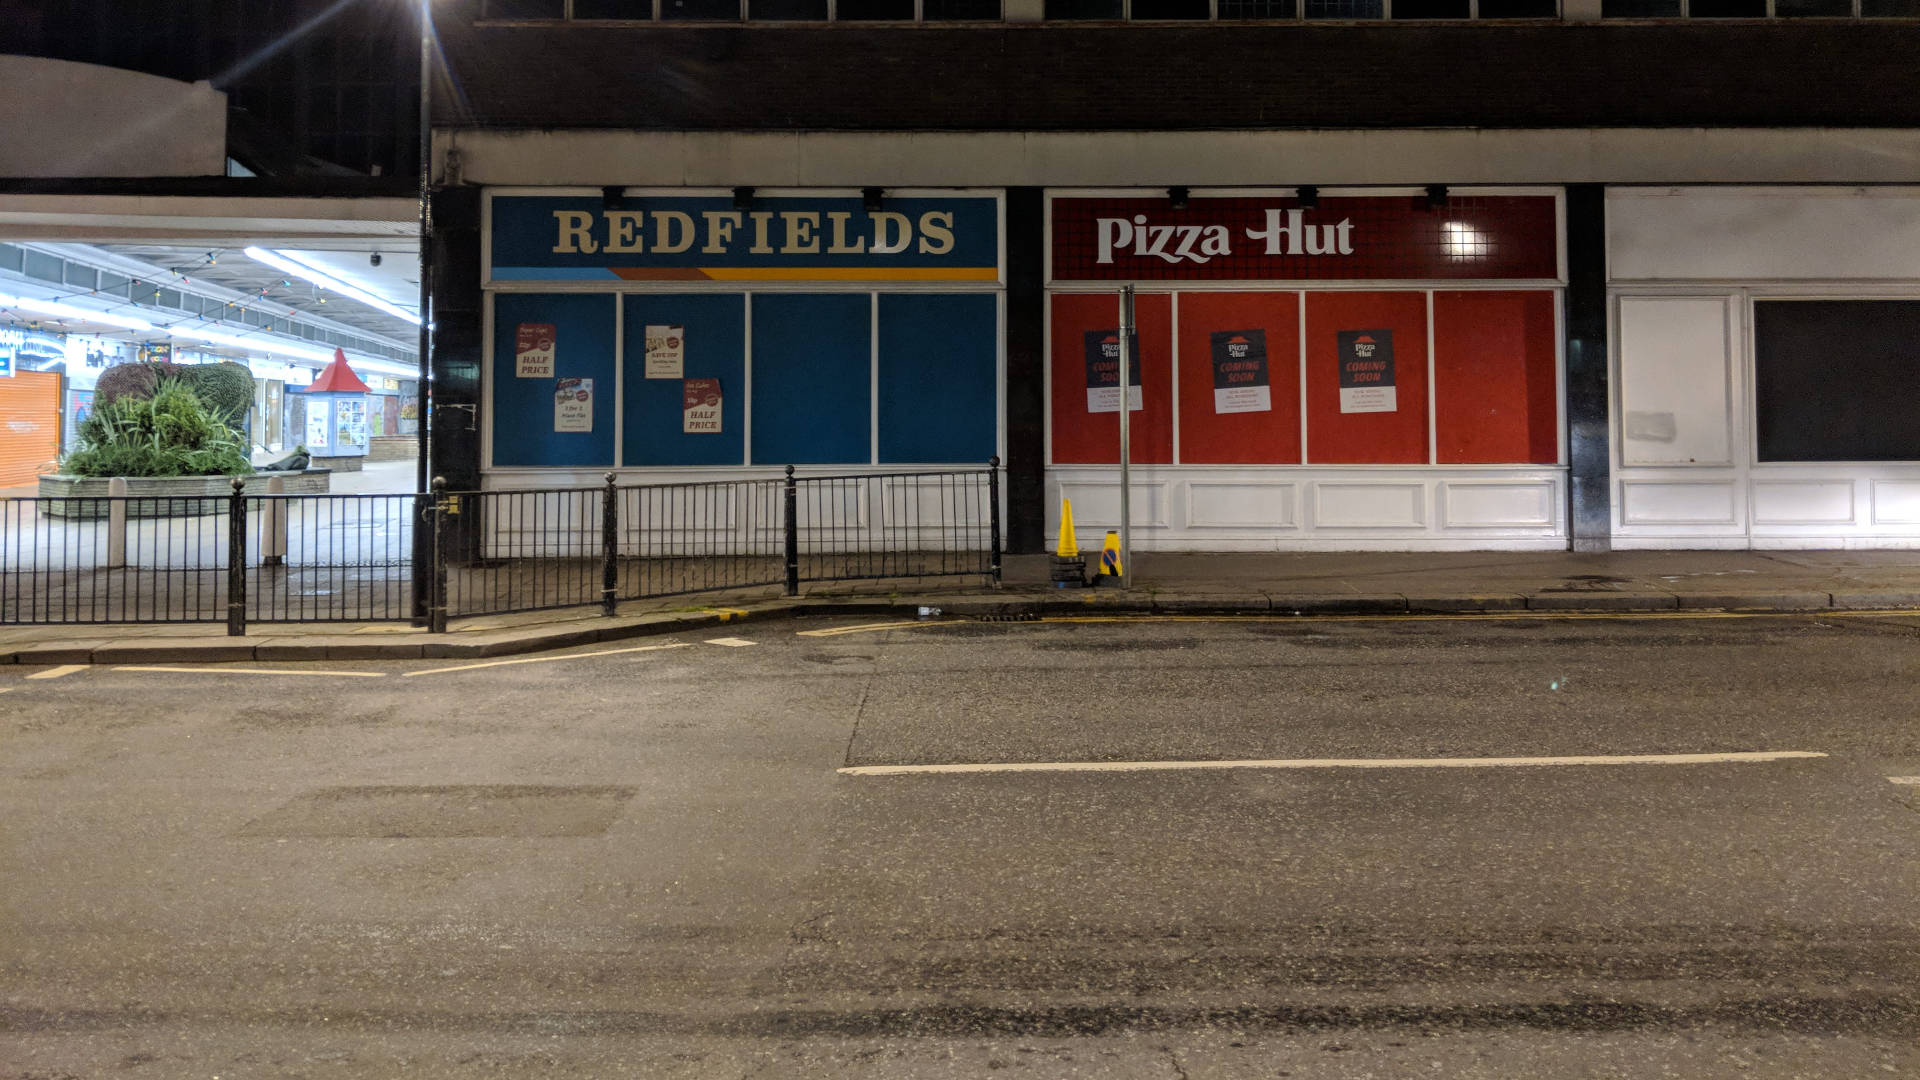 Pizzahut Und Redfields Geschäfte Wallpaper